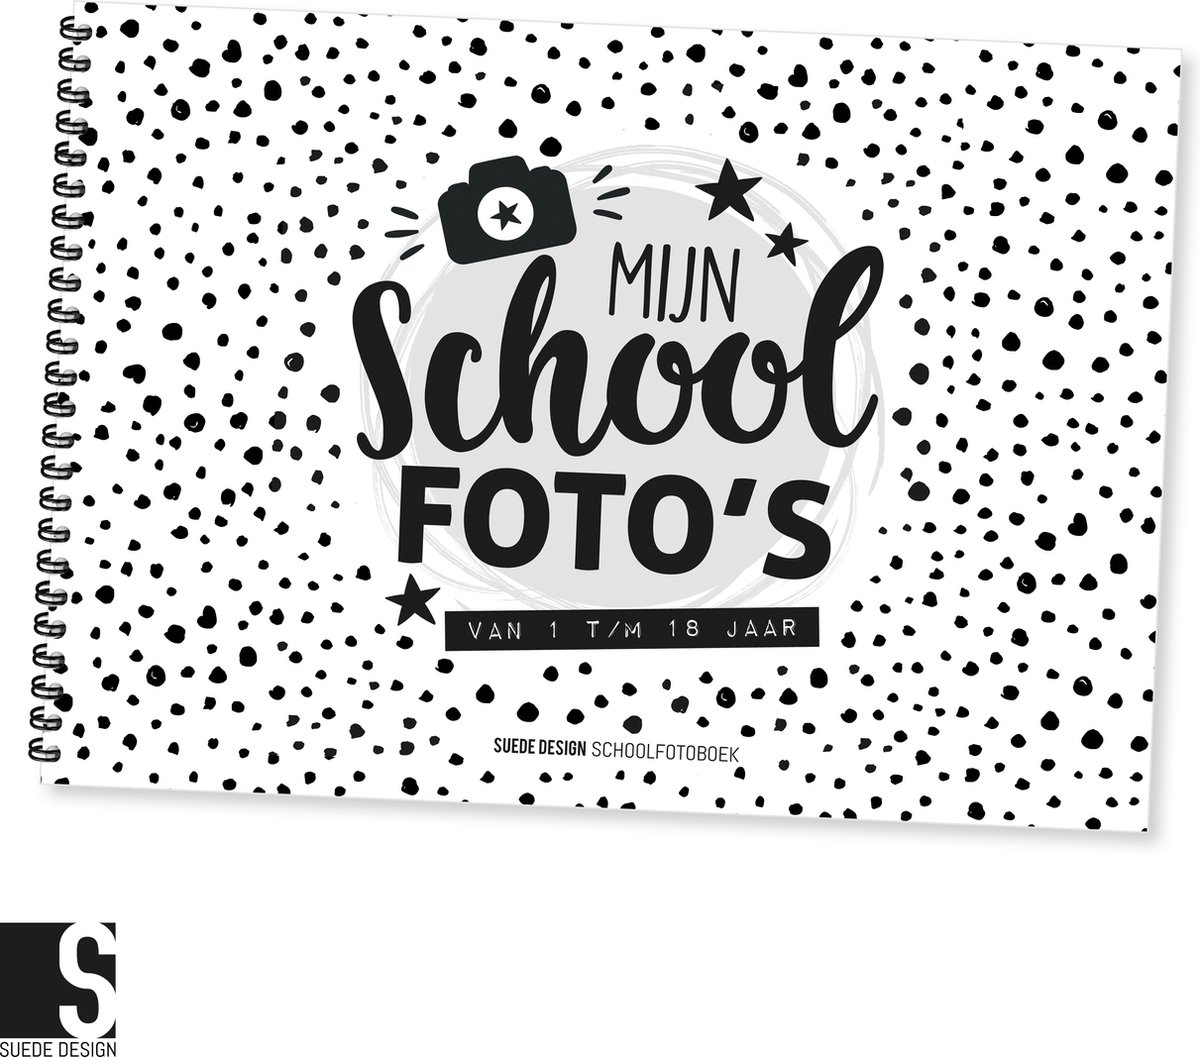 Schoolfotoboek | Mijn schoolfoto's van 1 t/m 18 jaar! | Suede design invulboek - Suede design